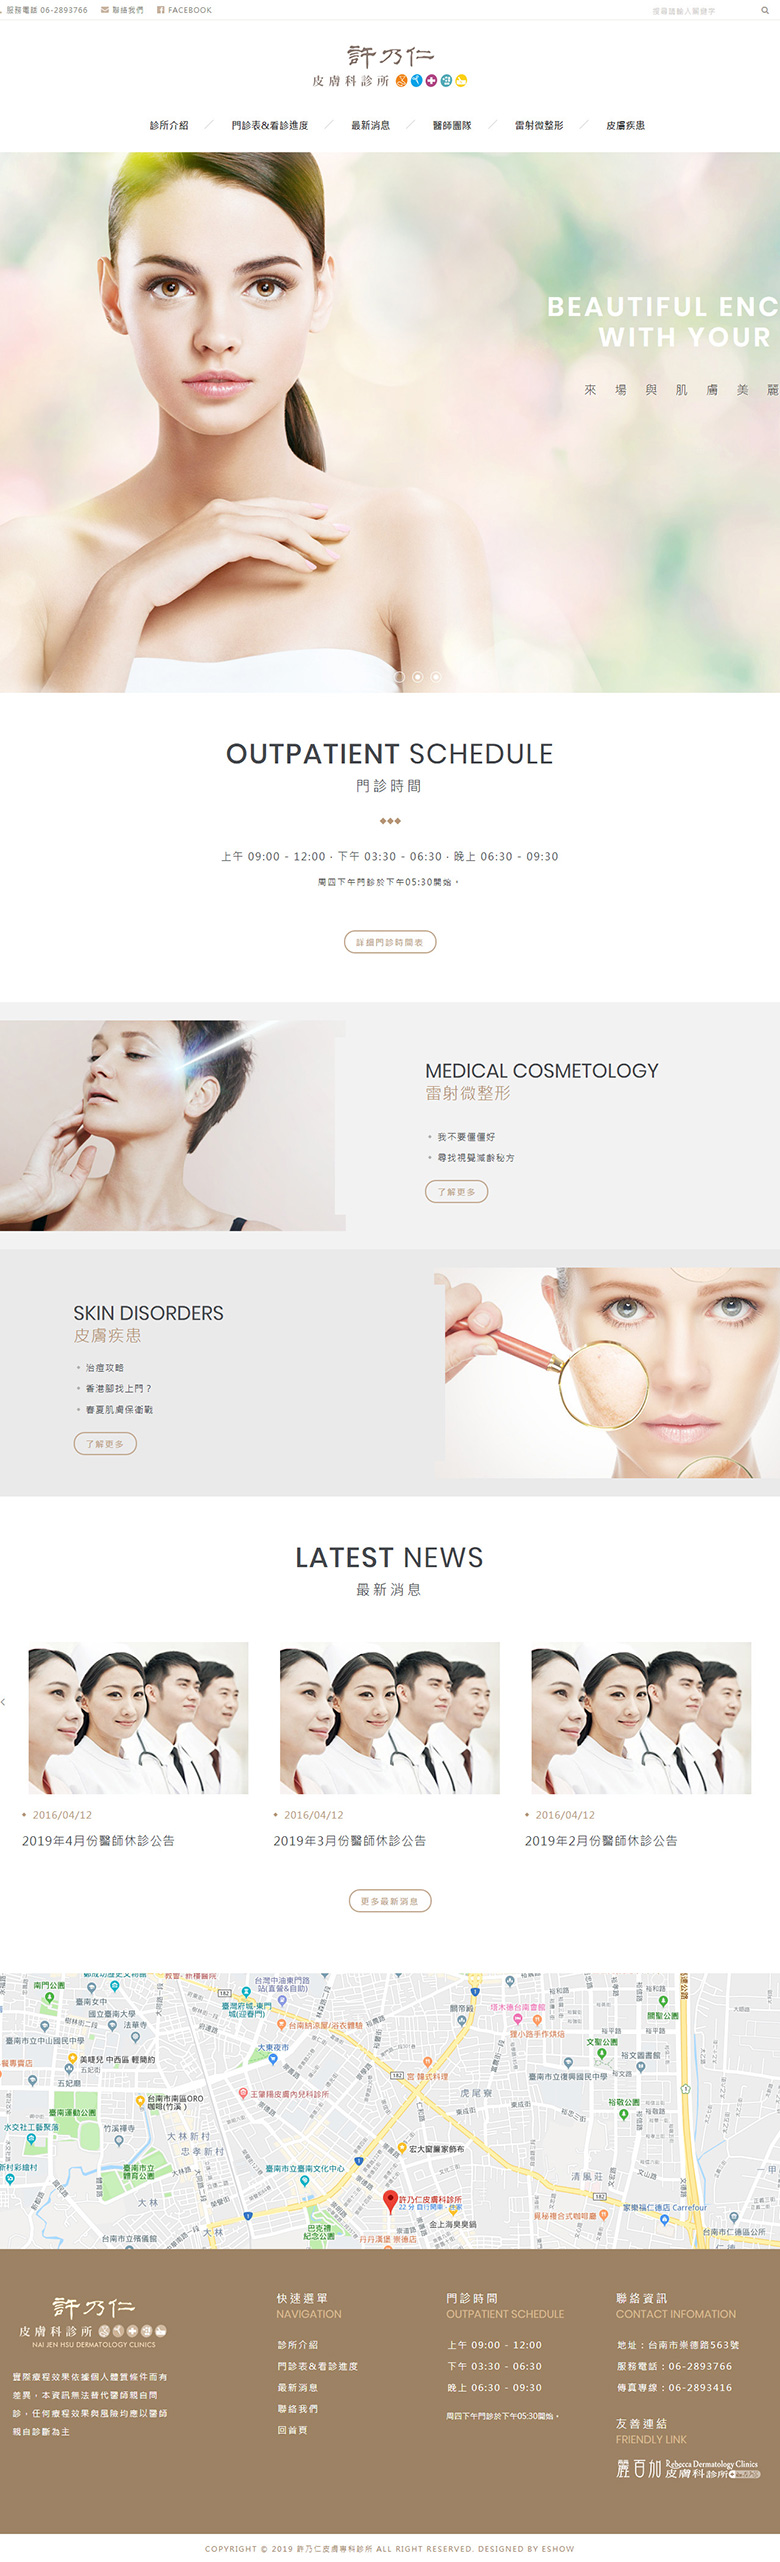 許乃仁皮膚科診所 皮膚科診所網站設計
